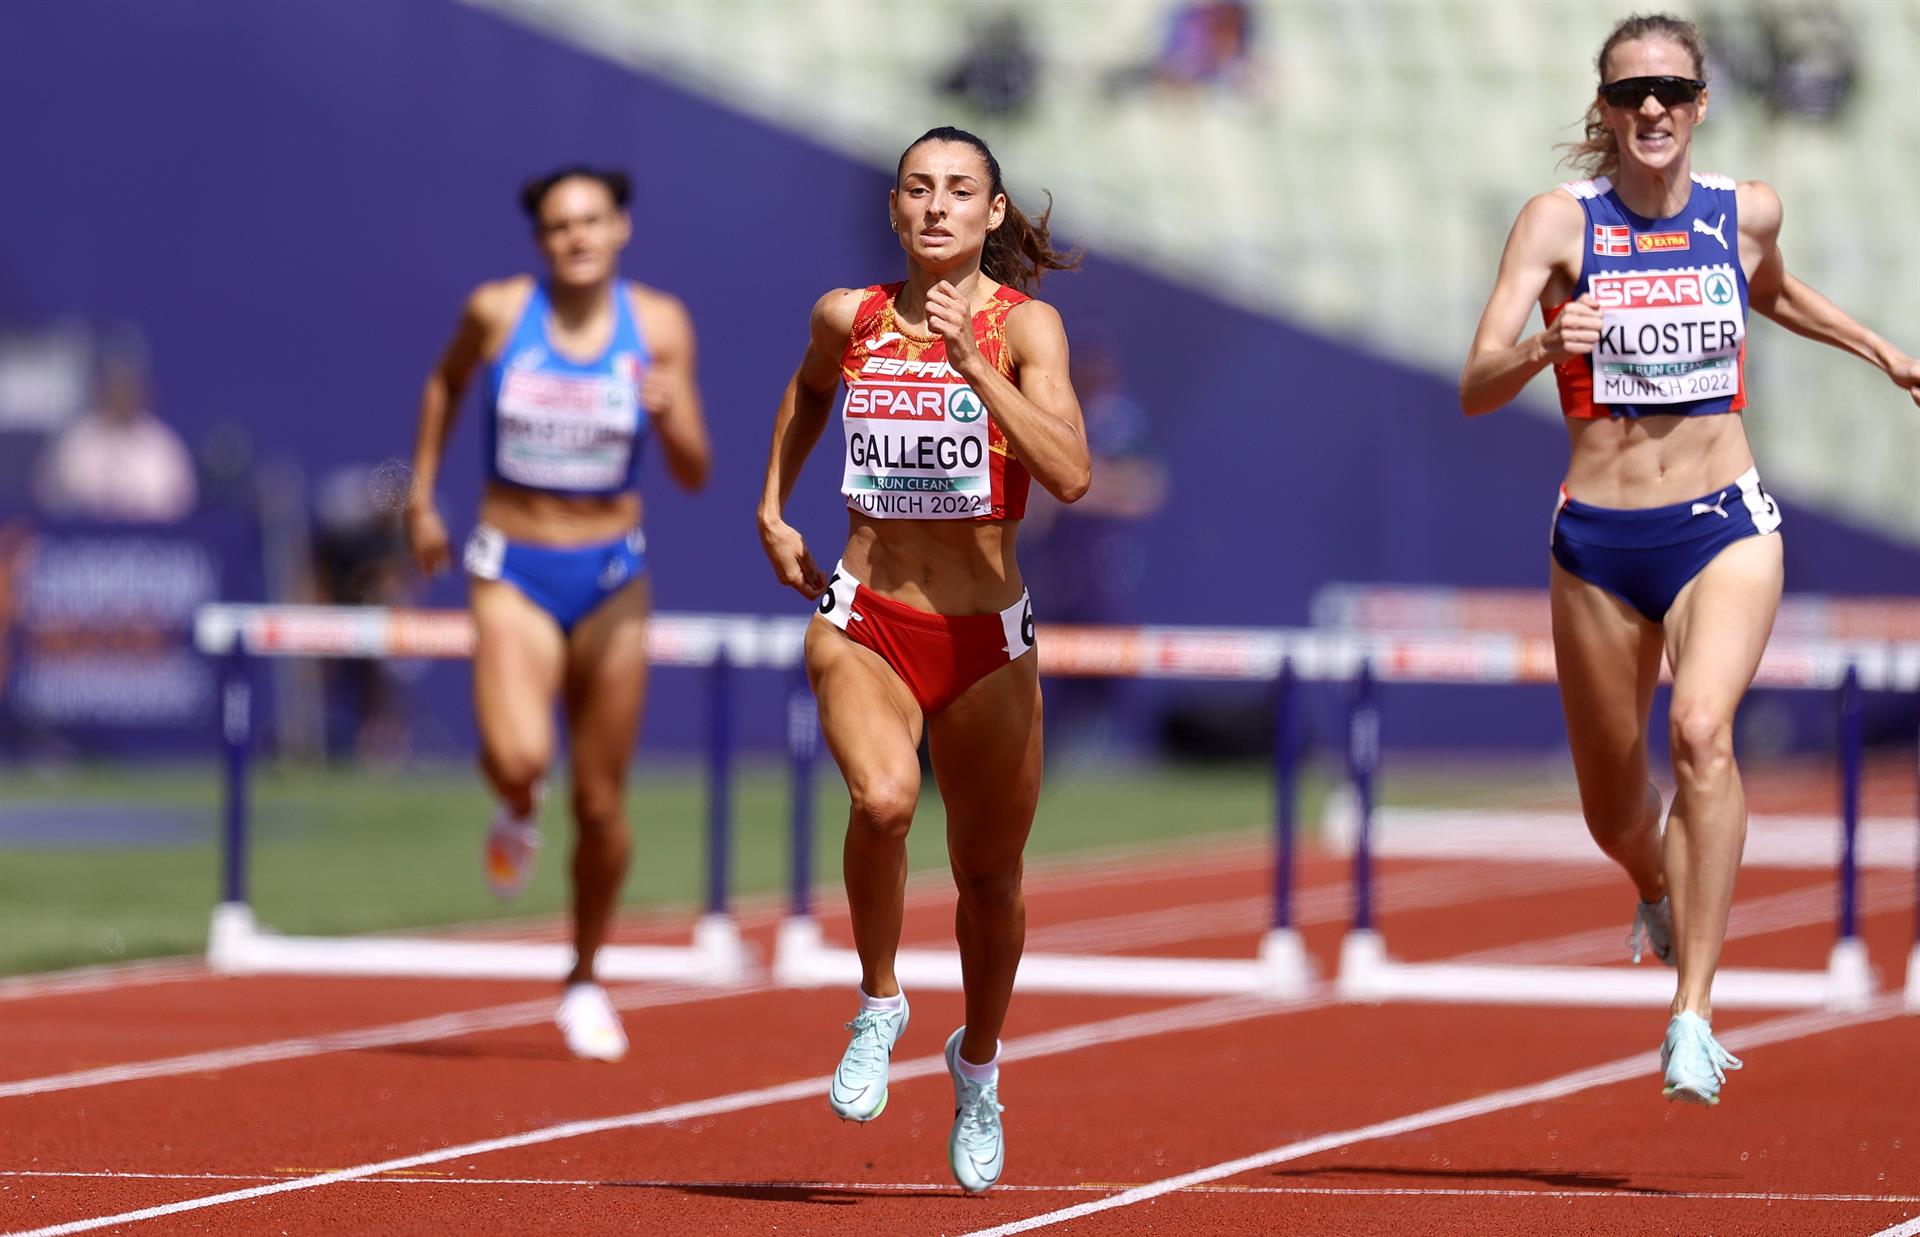 La española Sara Gallego, clasificada para la final de 400 vallas de los Europeos de atletismo de Múnich tras ganar su semifinal. EFE/EPA/RONALD WITTEK